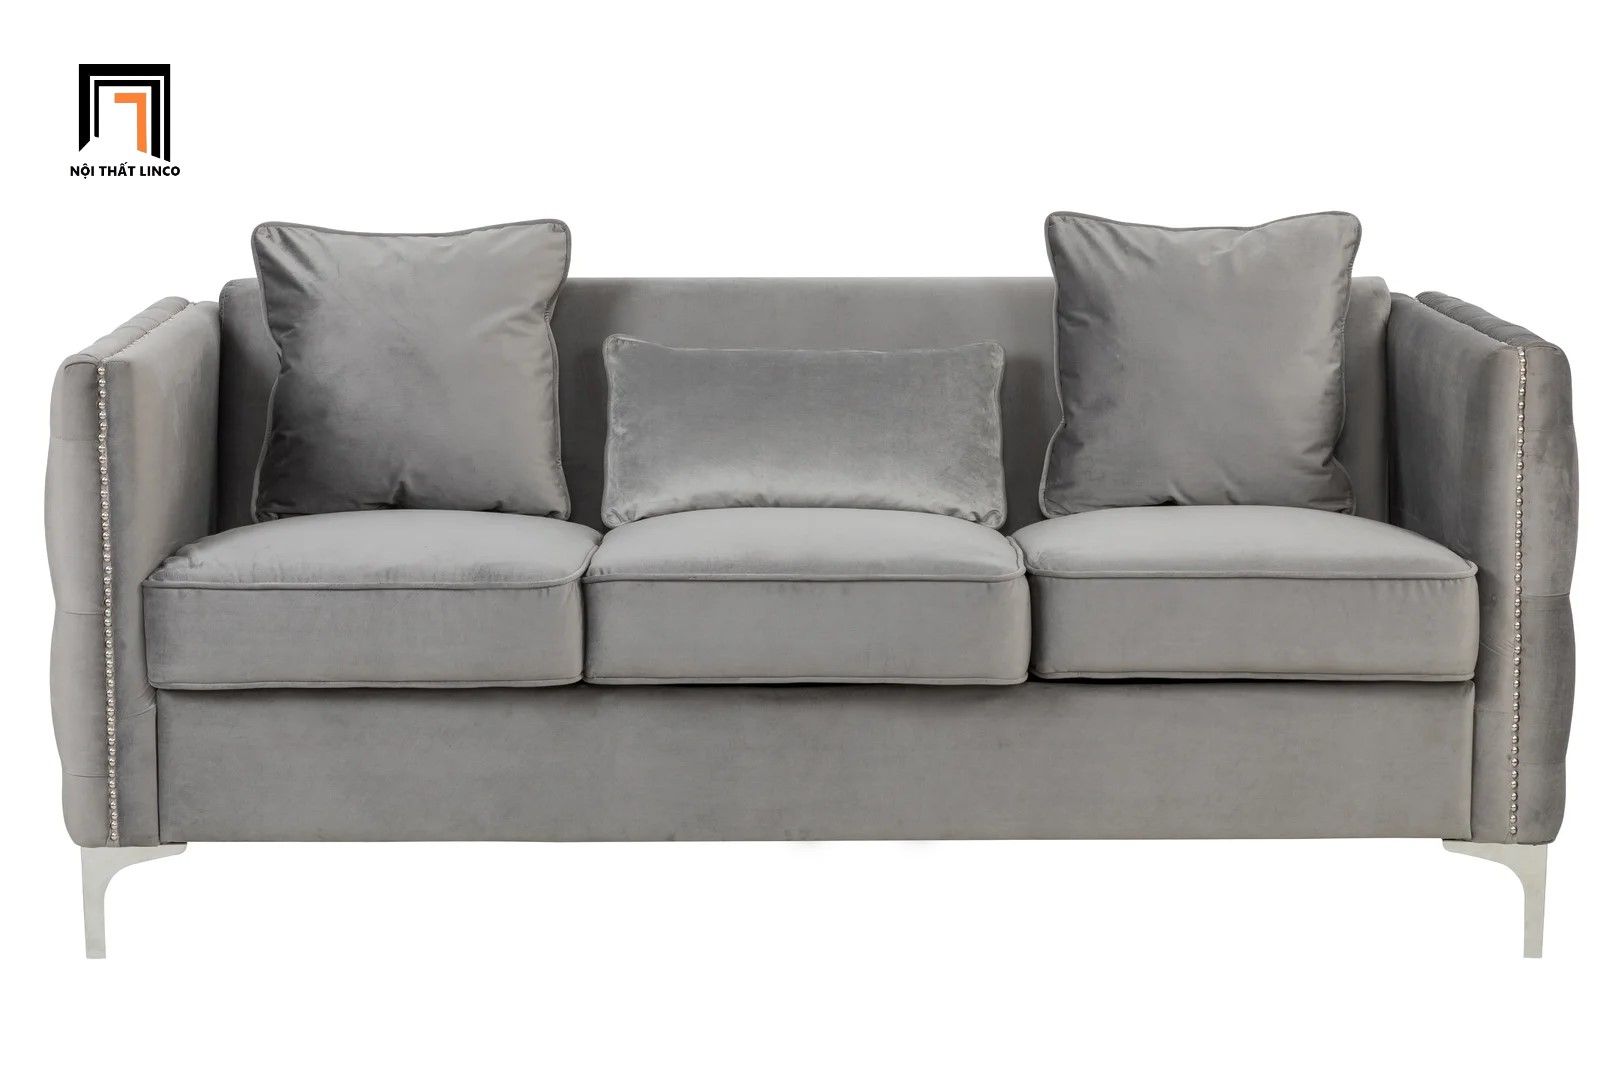  Bộ ghế sofa giật nút sang trọng KT122 Essex vải nhung xám trắng 